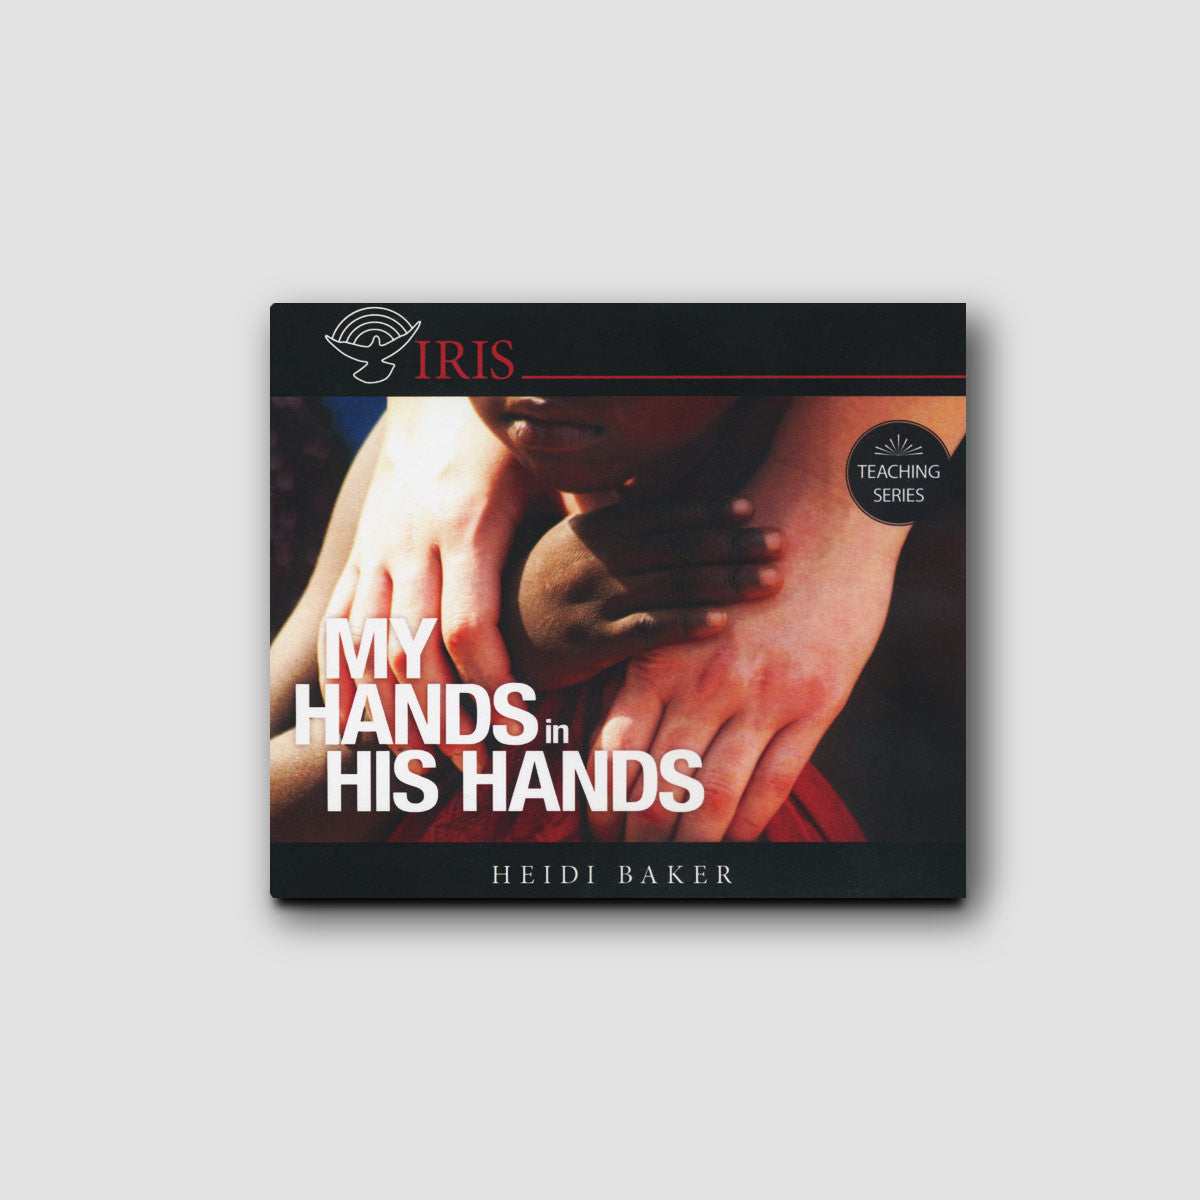 My Hands in His Hands